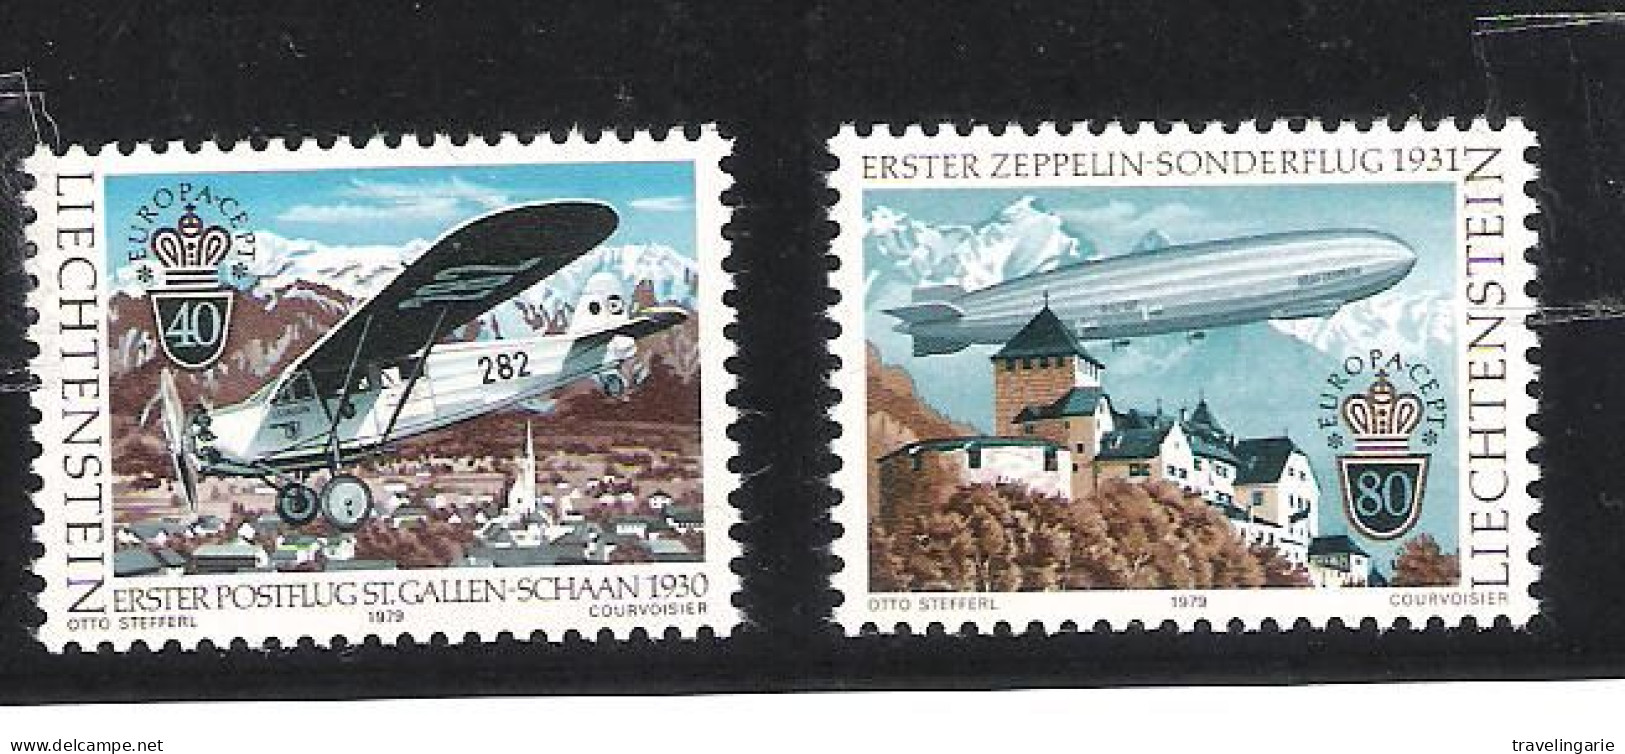 Liechtenstein 1979 Europa Cept, Areoplanes ** MNH - Unused Stamps